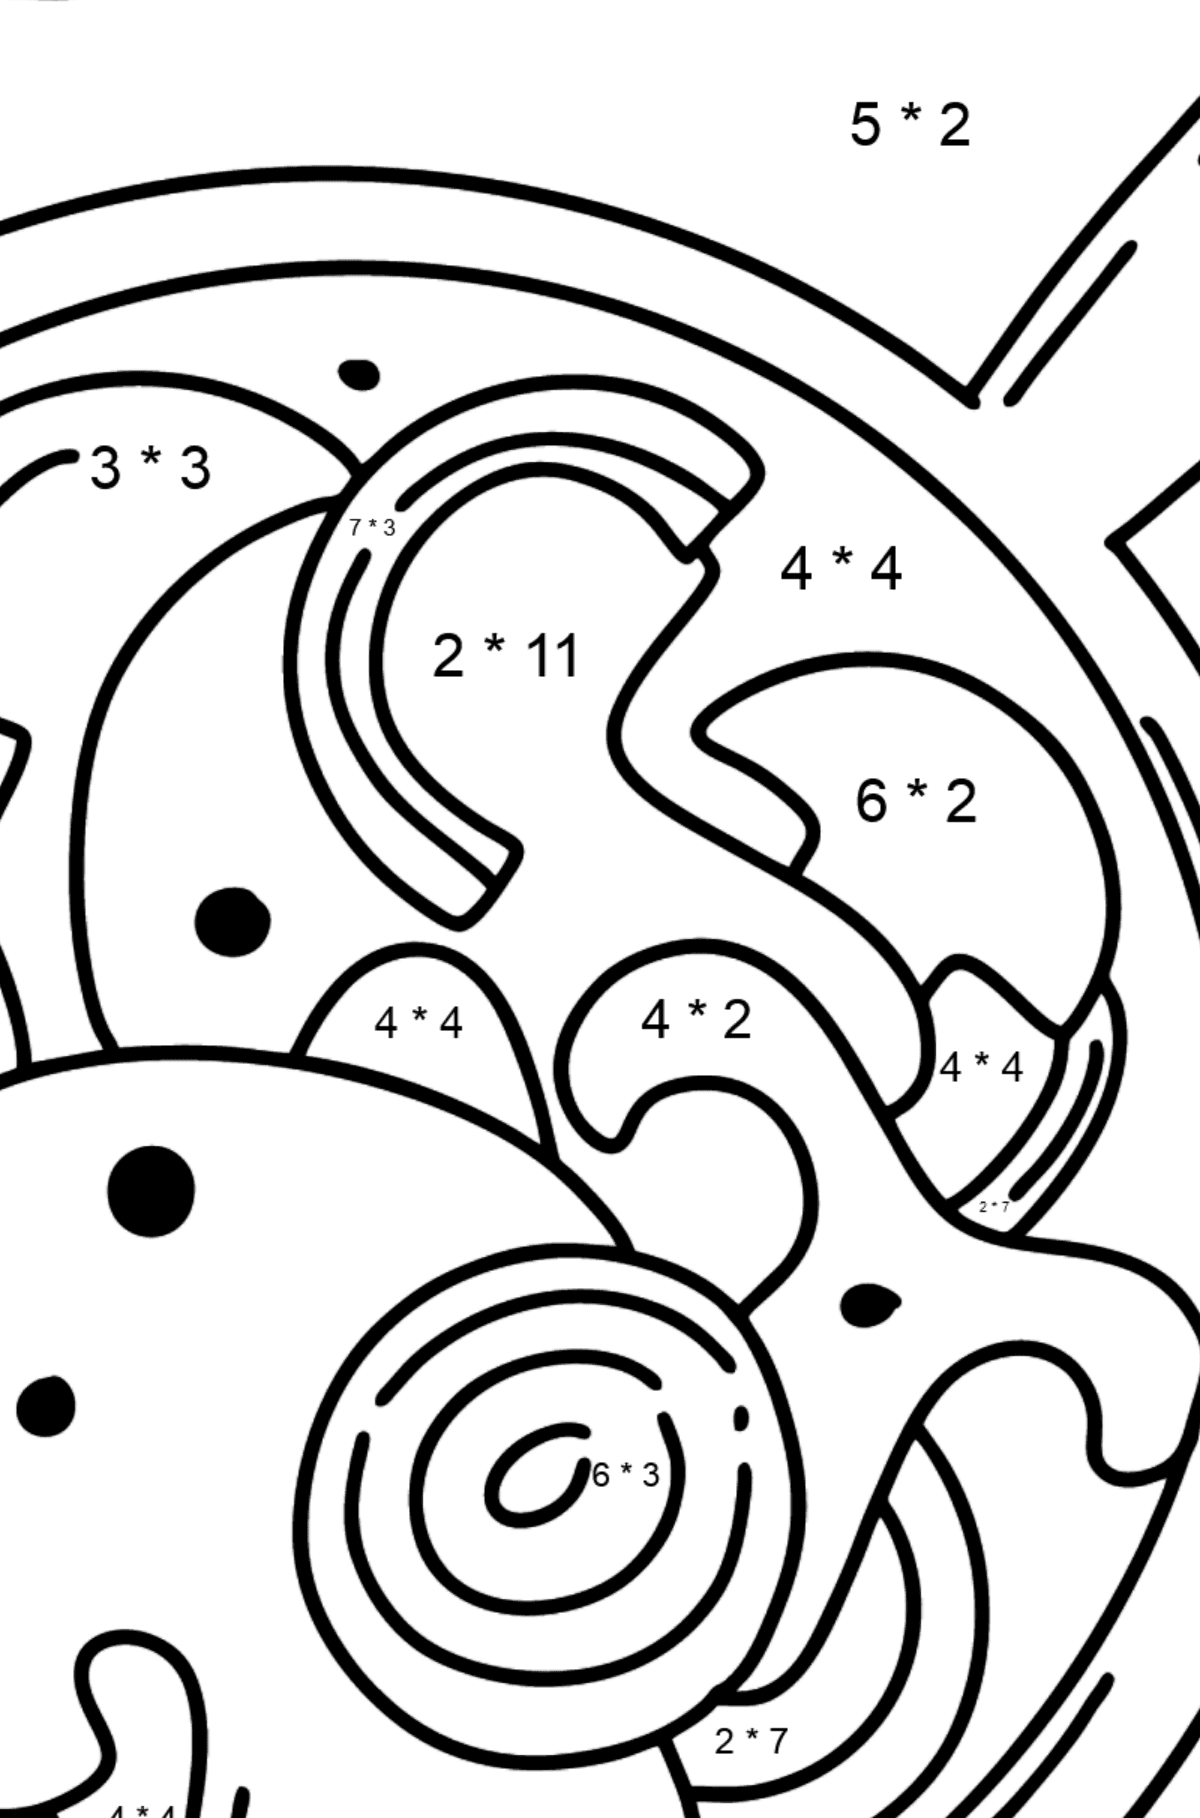 Desenho de Cogumelos em Molho Cremoso - Colorindo com Matemática - Multiplicação para Crianças